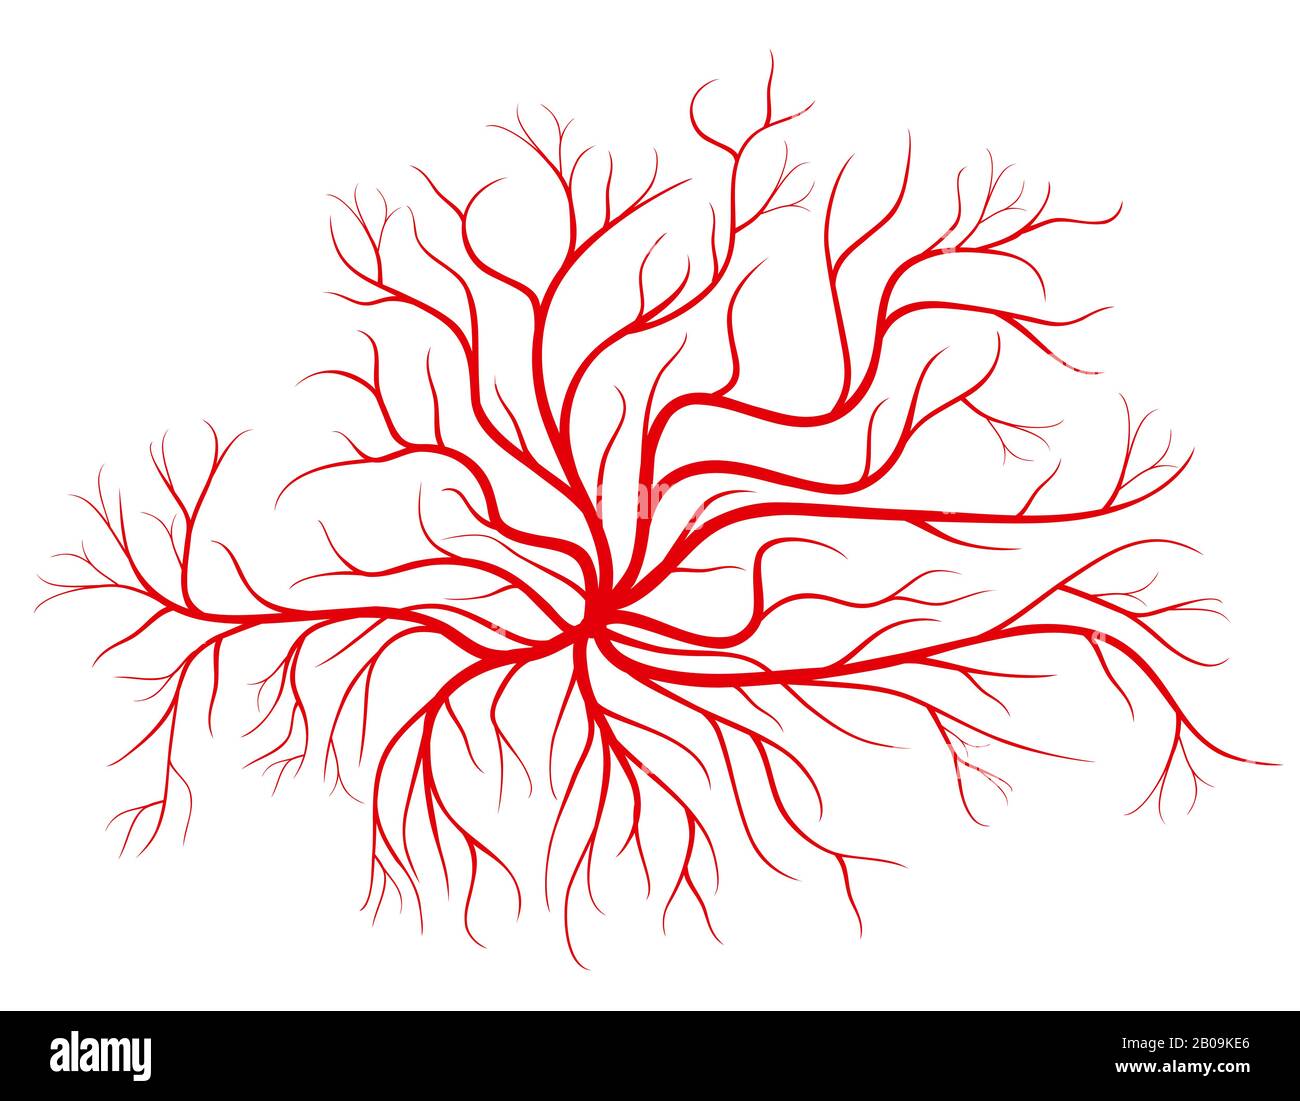 Vene del sangue umano, rappresentazione vettoriale dei vasi rossi. Vaso sanguigno e vaso di sagoma rossa cardiovascolare umano Illustrazione Vettoriale